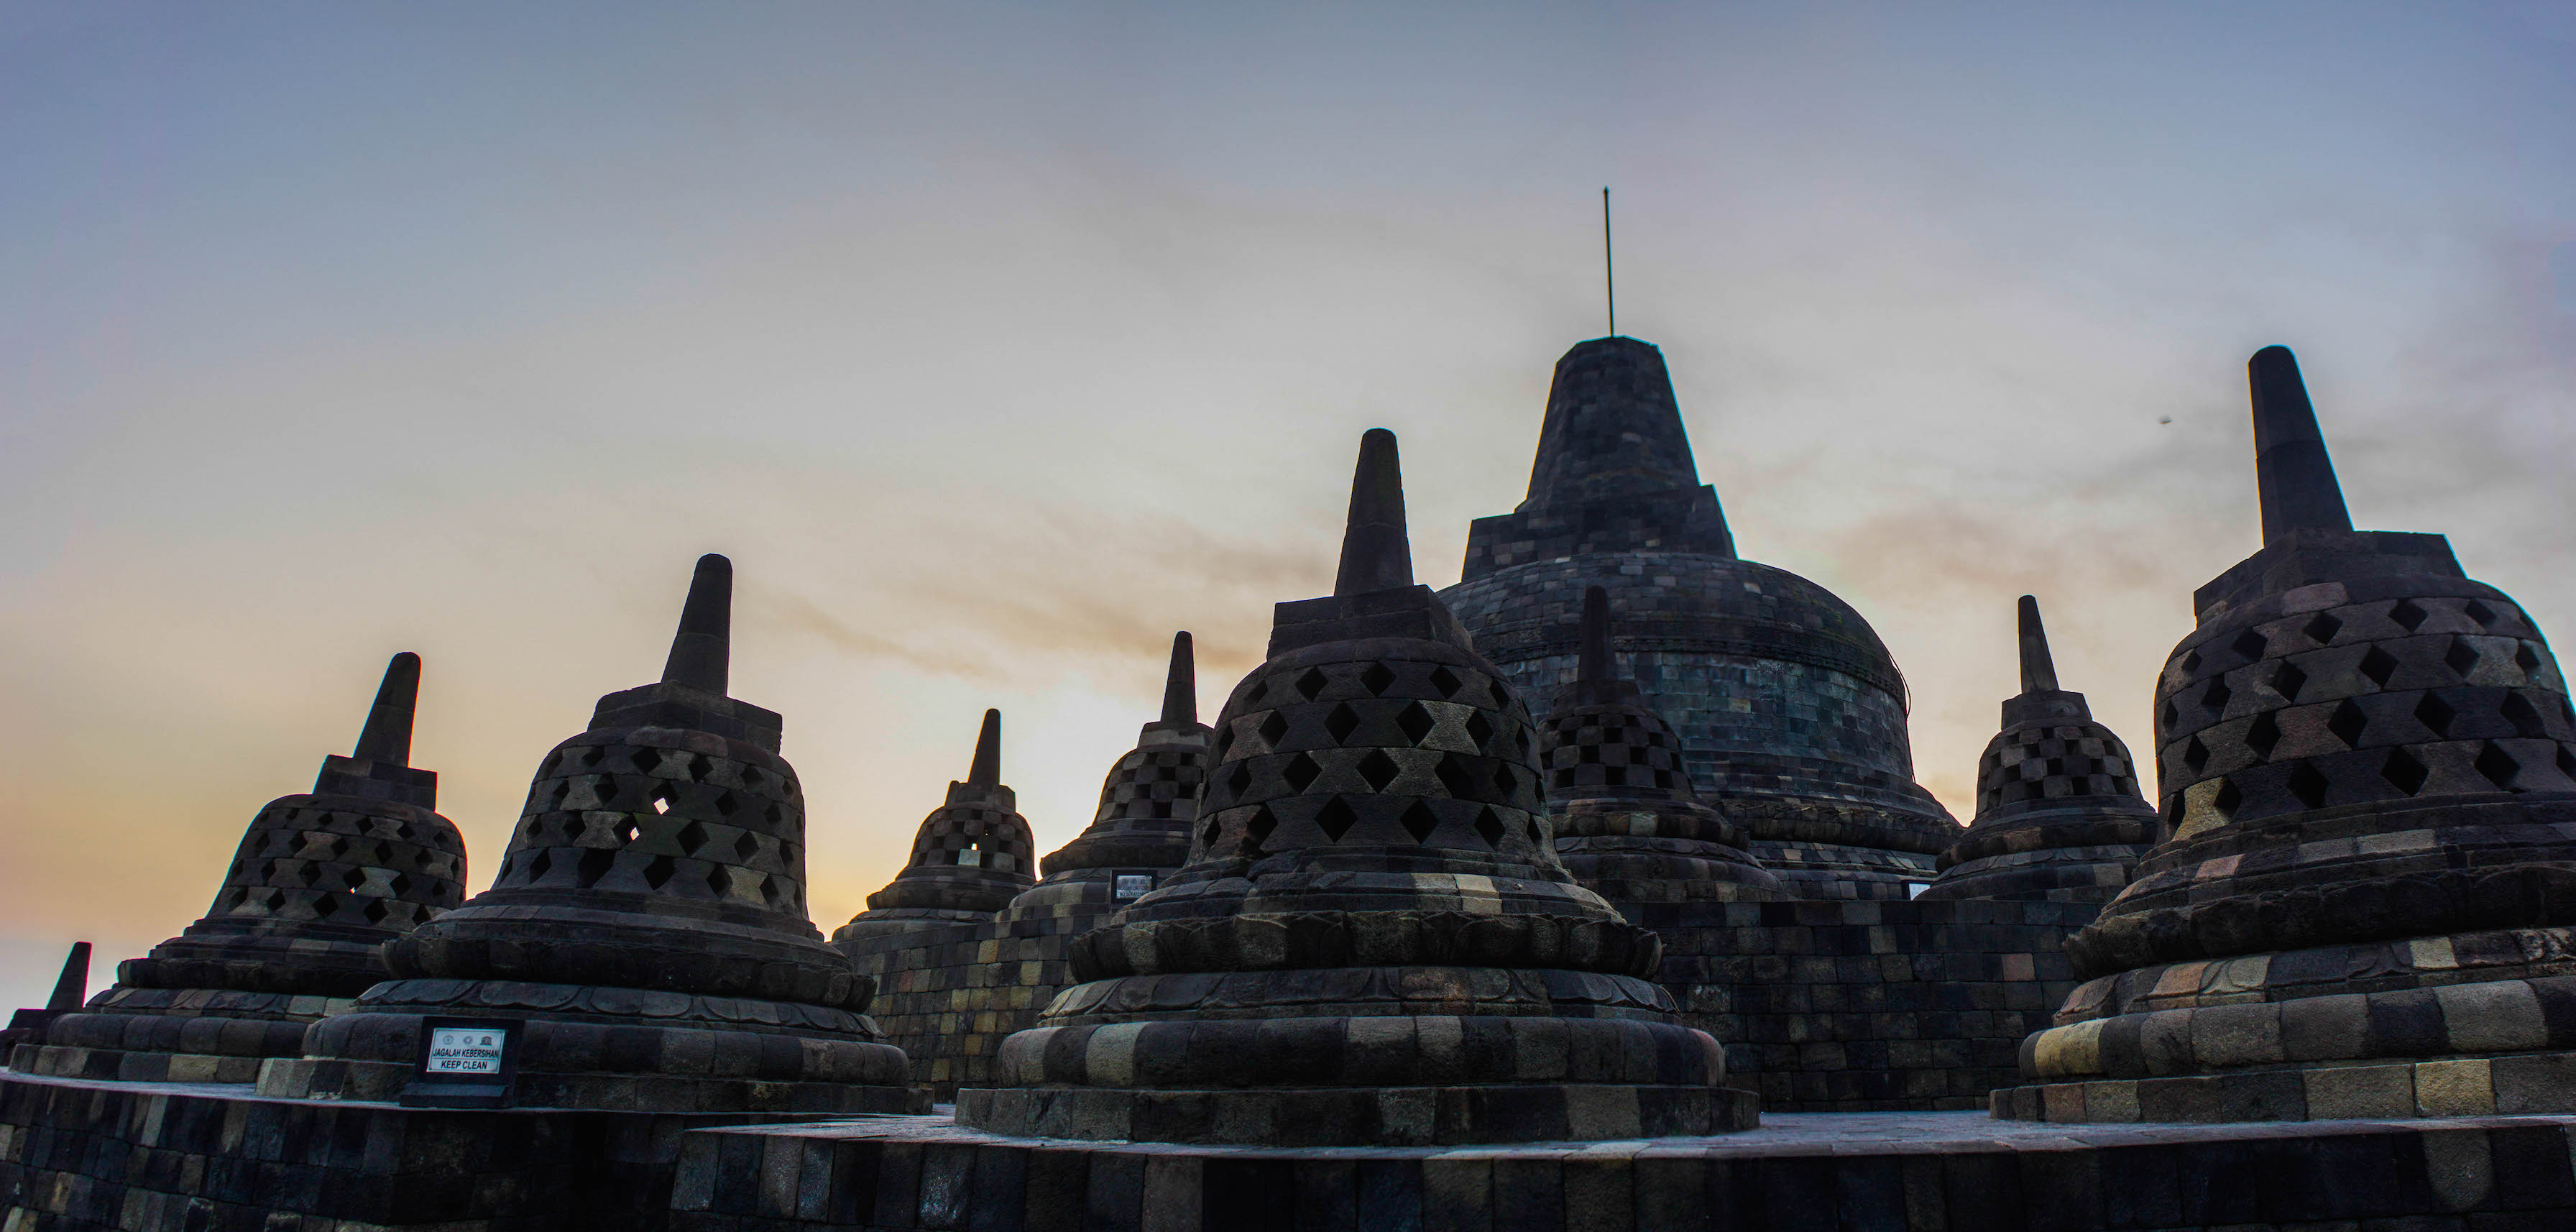 Top level of Borobudur, Indonesia